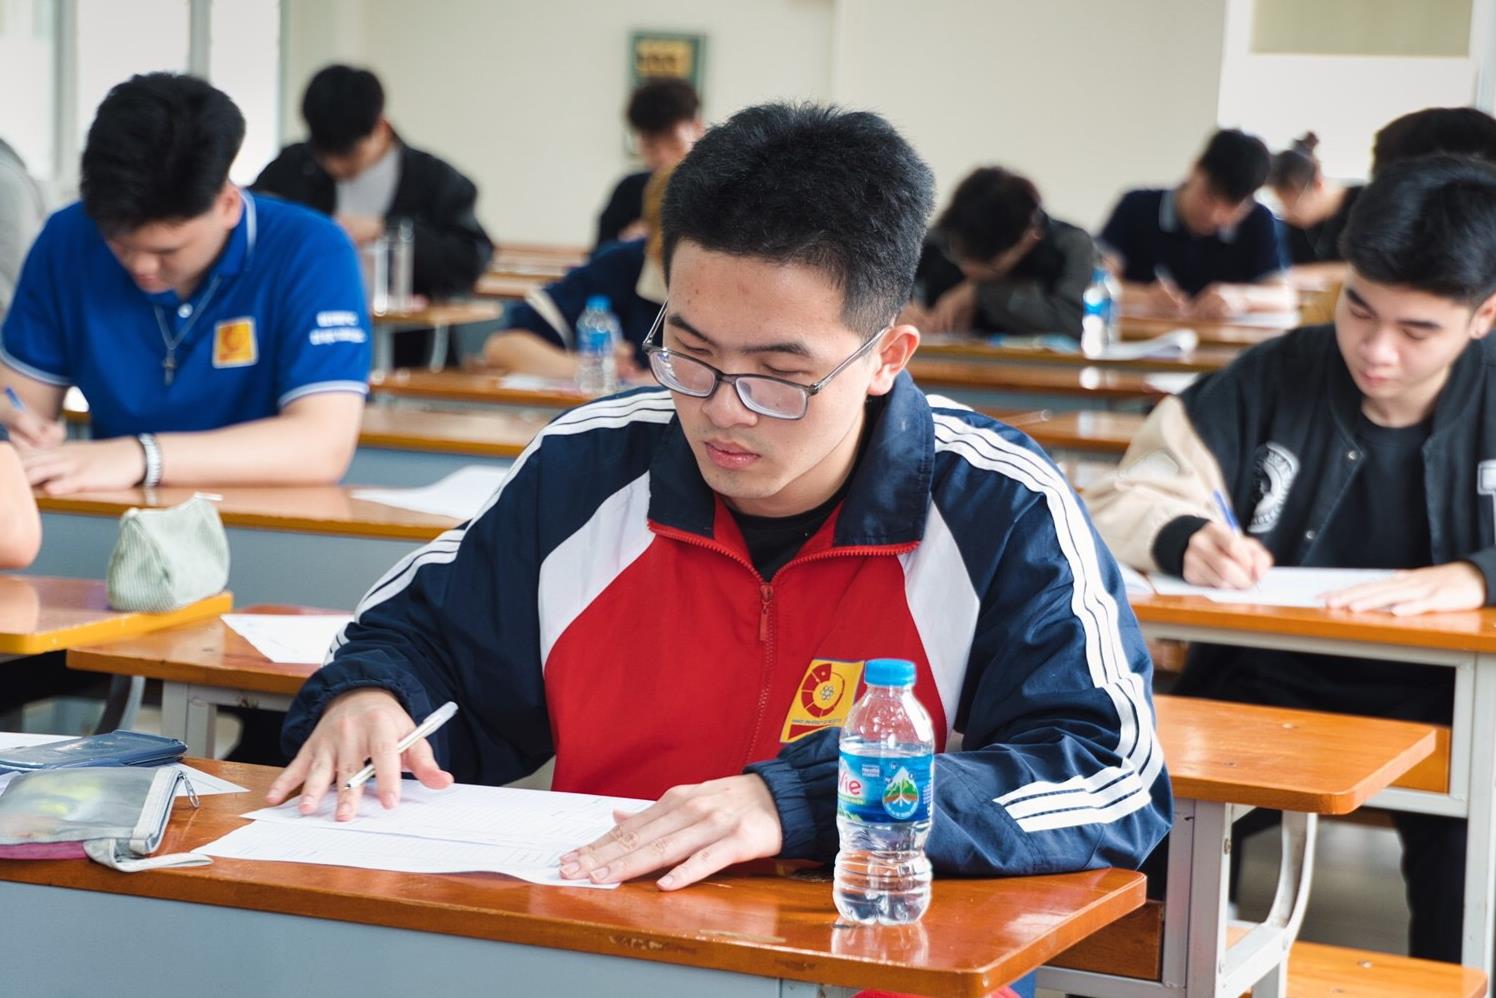 [tapchicongthuong] Trường Đại học Công nghiệp Hà Nội: Tìm kiếm tài năng qua Cuộc thi Olympic Cơ học cấp trường